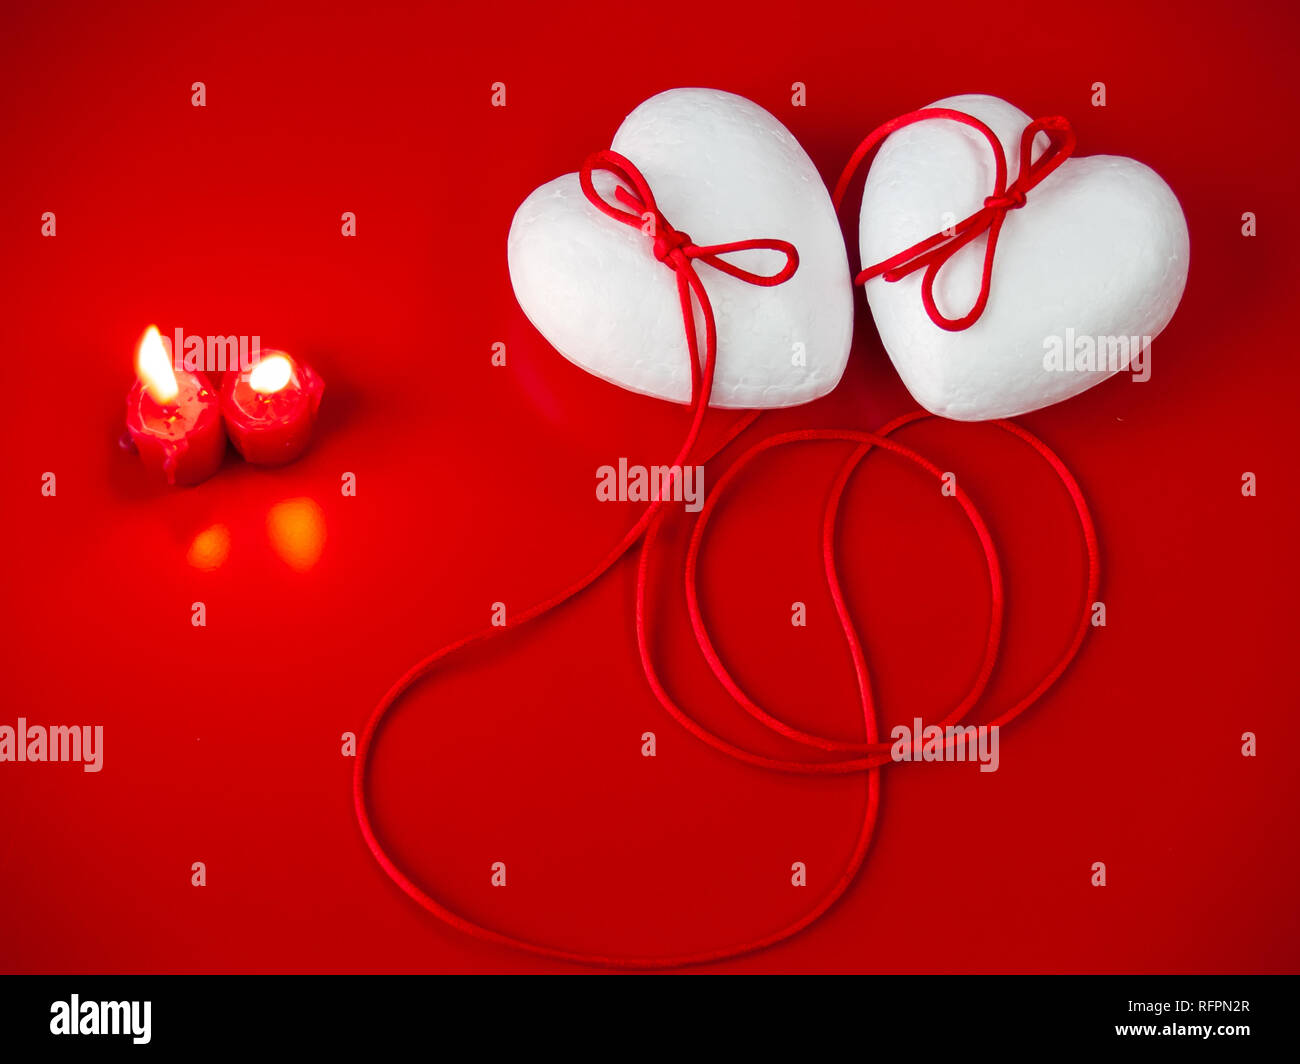 Concetto di amore poliespan due cuori uniti con un filo rosso che  simboleggia la leggenda del filo rosso e rosso due candele accese Foto  stock - Alamy